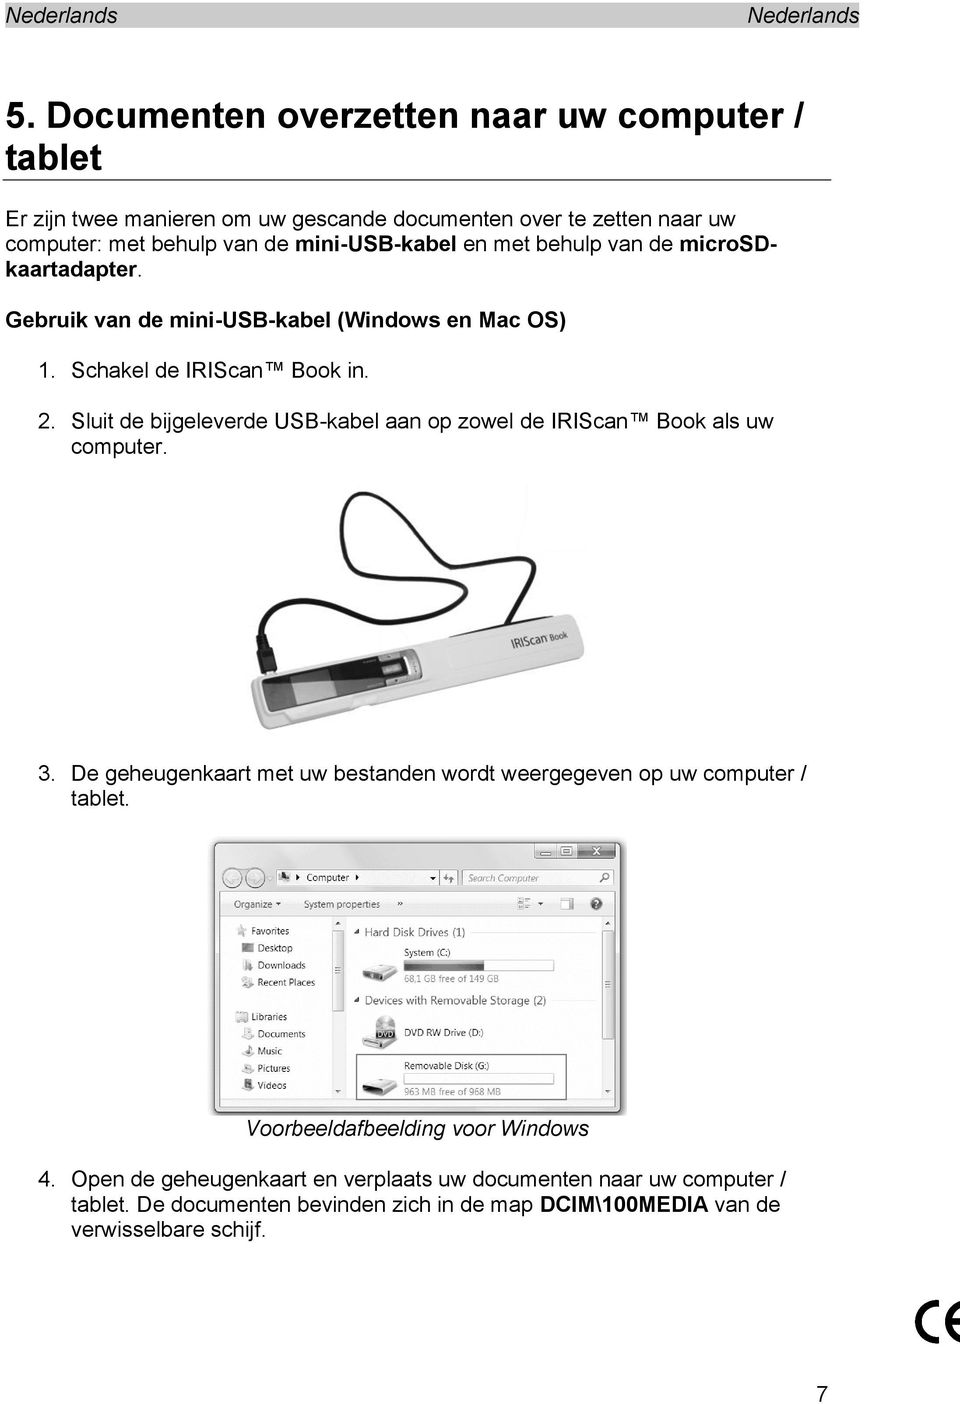 Sluit de bijgeleverde USB-kabel aan op zowel de IRIScan Book als uw computer. 3. De geheugenkaart met uw bestanden wordt weergegeven op uw computer / tablet.